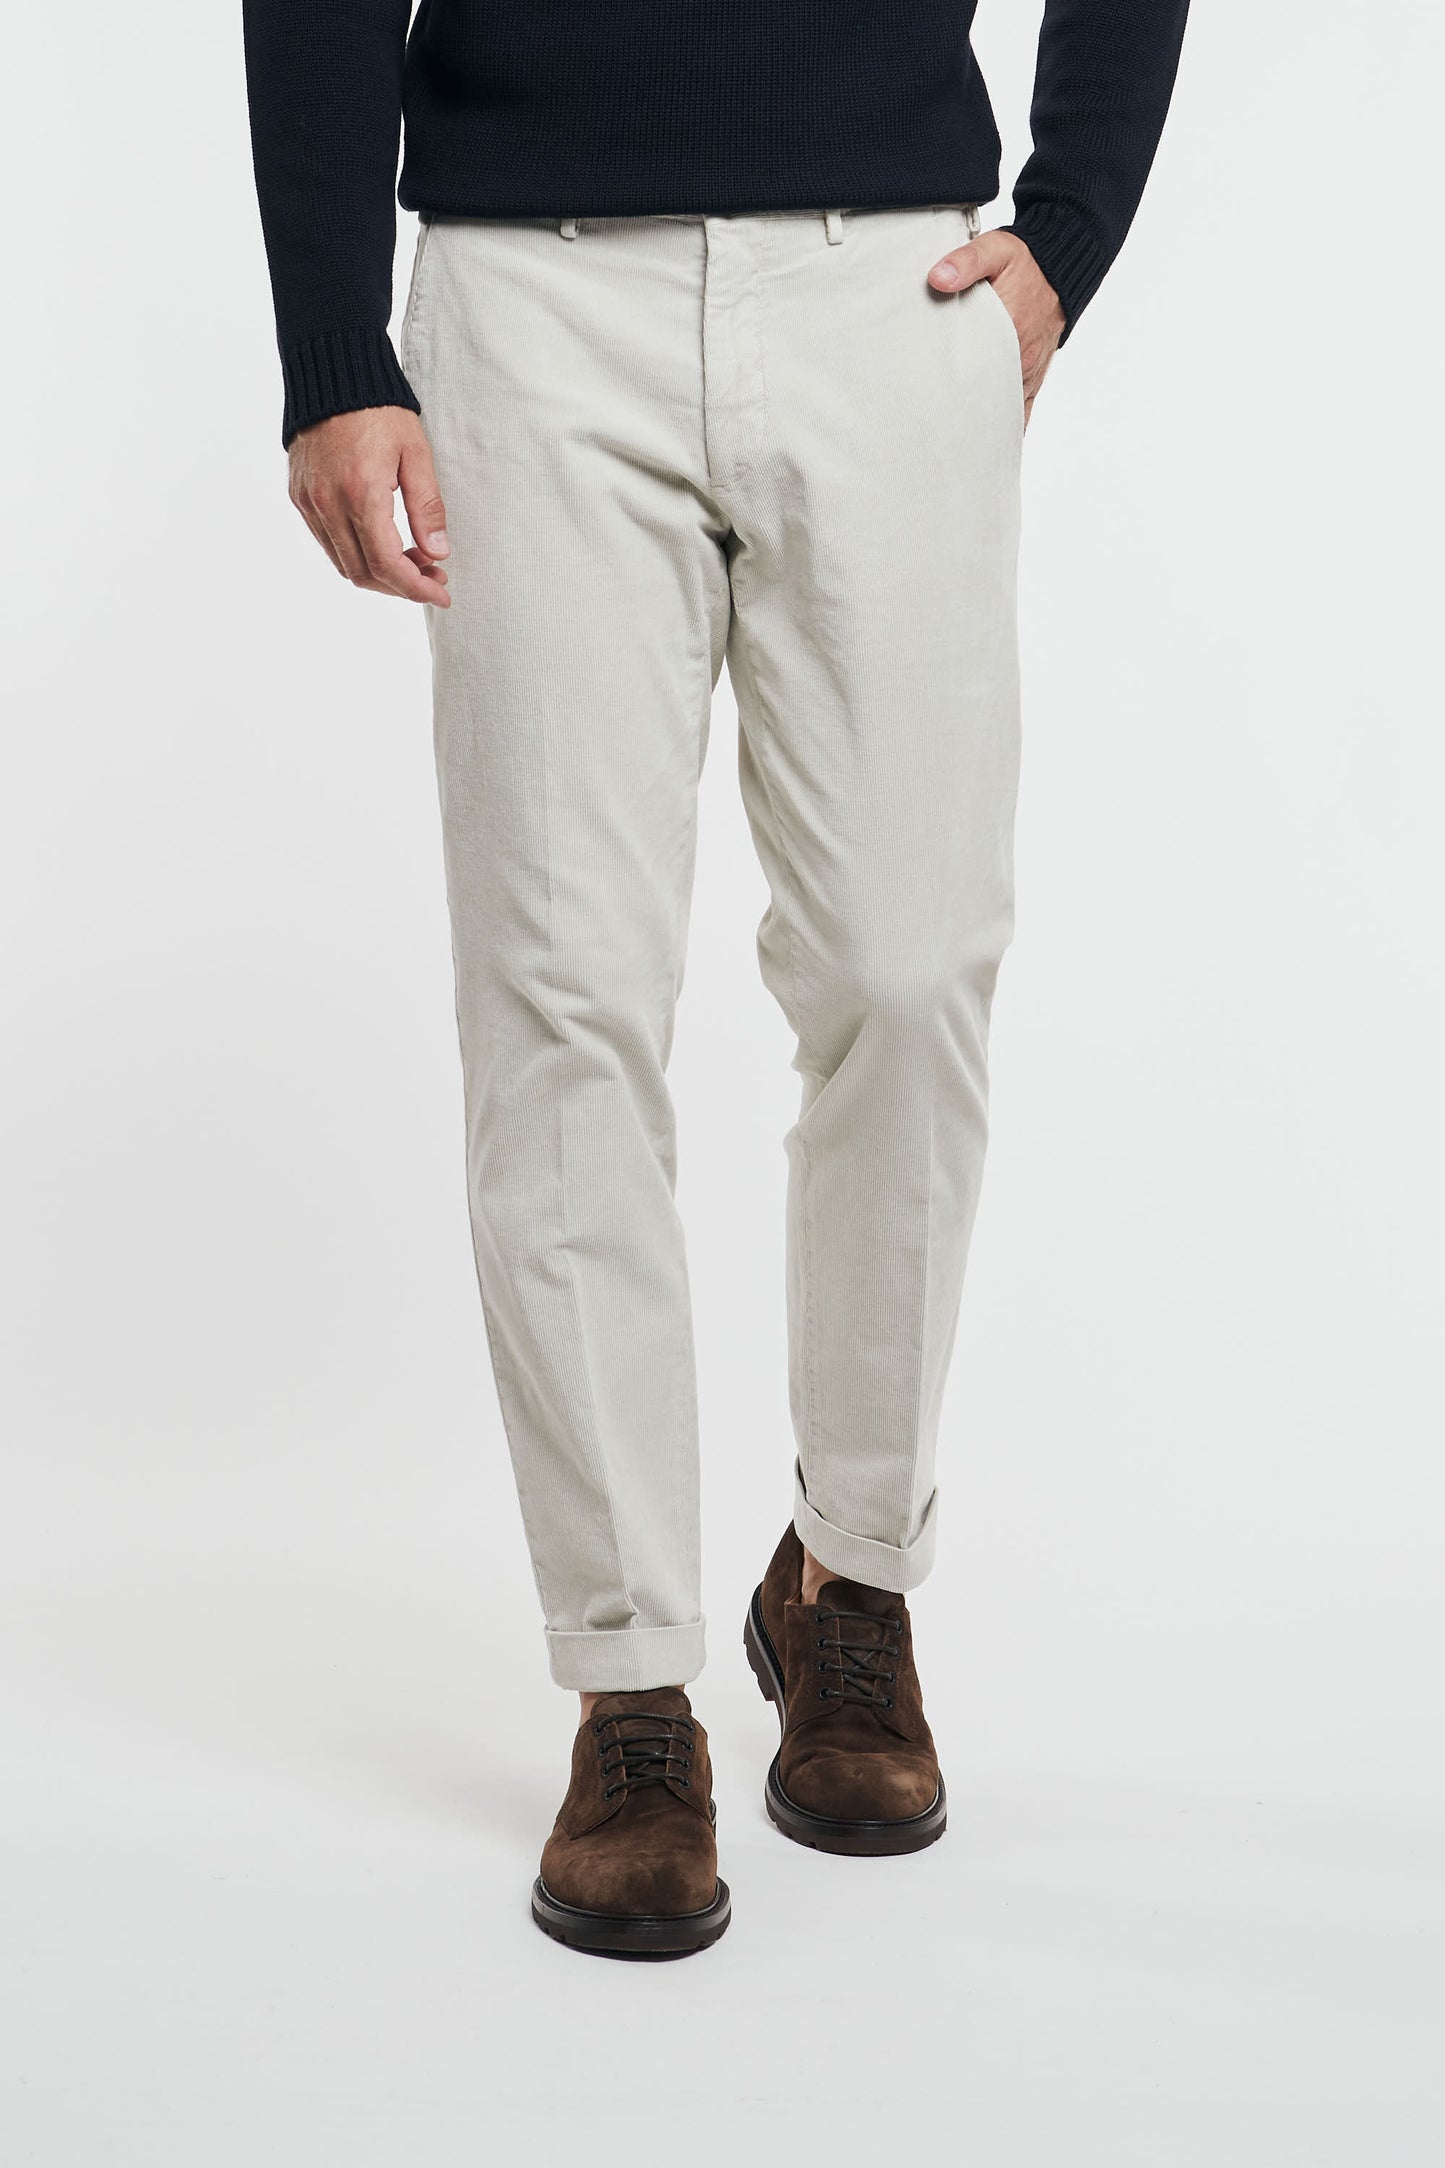  Santaniello Men's Multicolor Trousers 92854-1650 Multicolore Uomo - 1